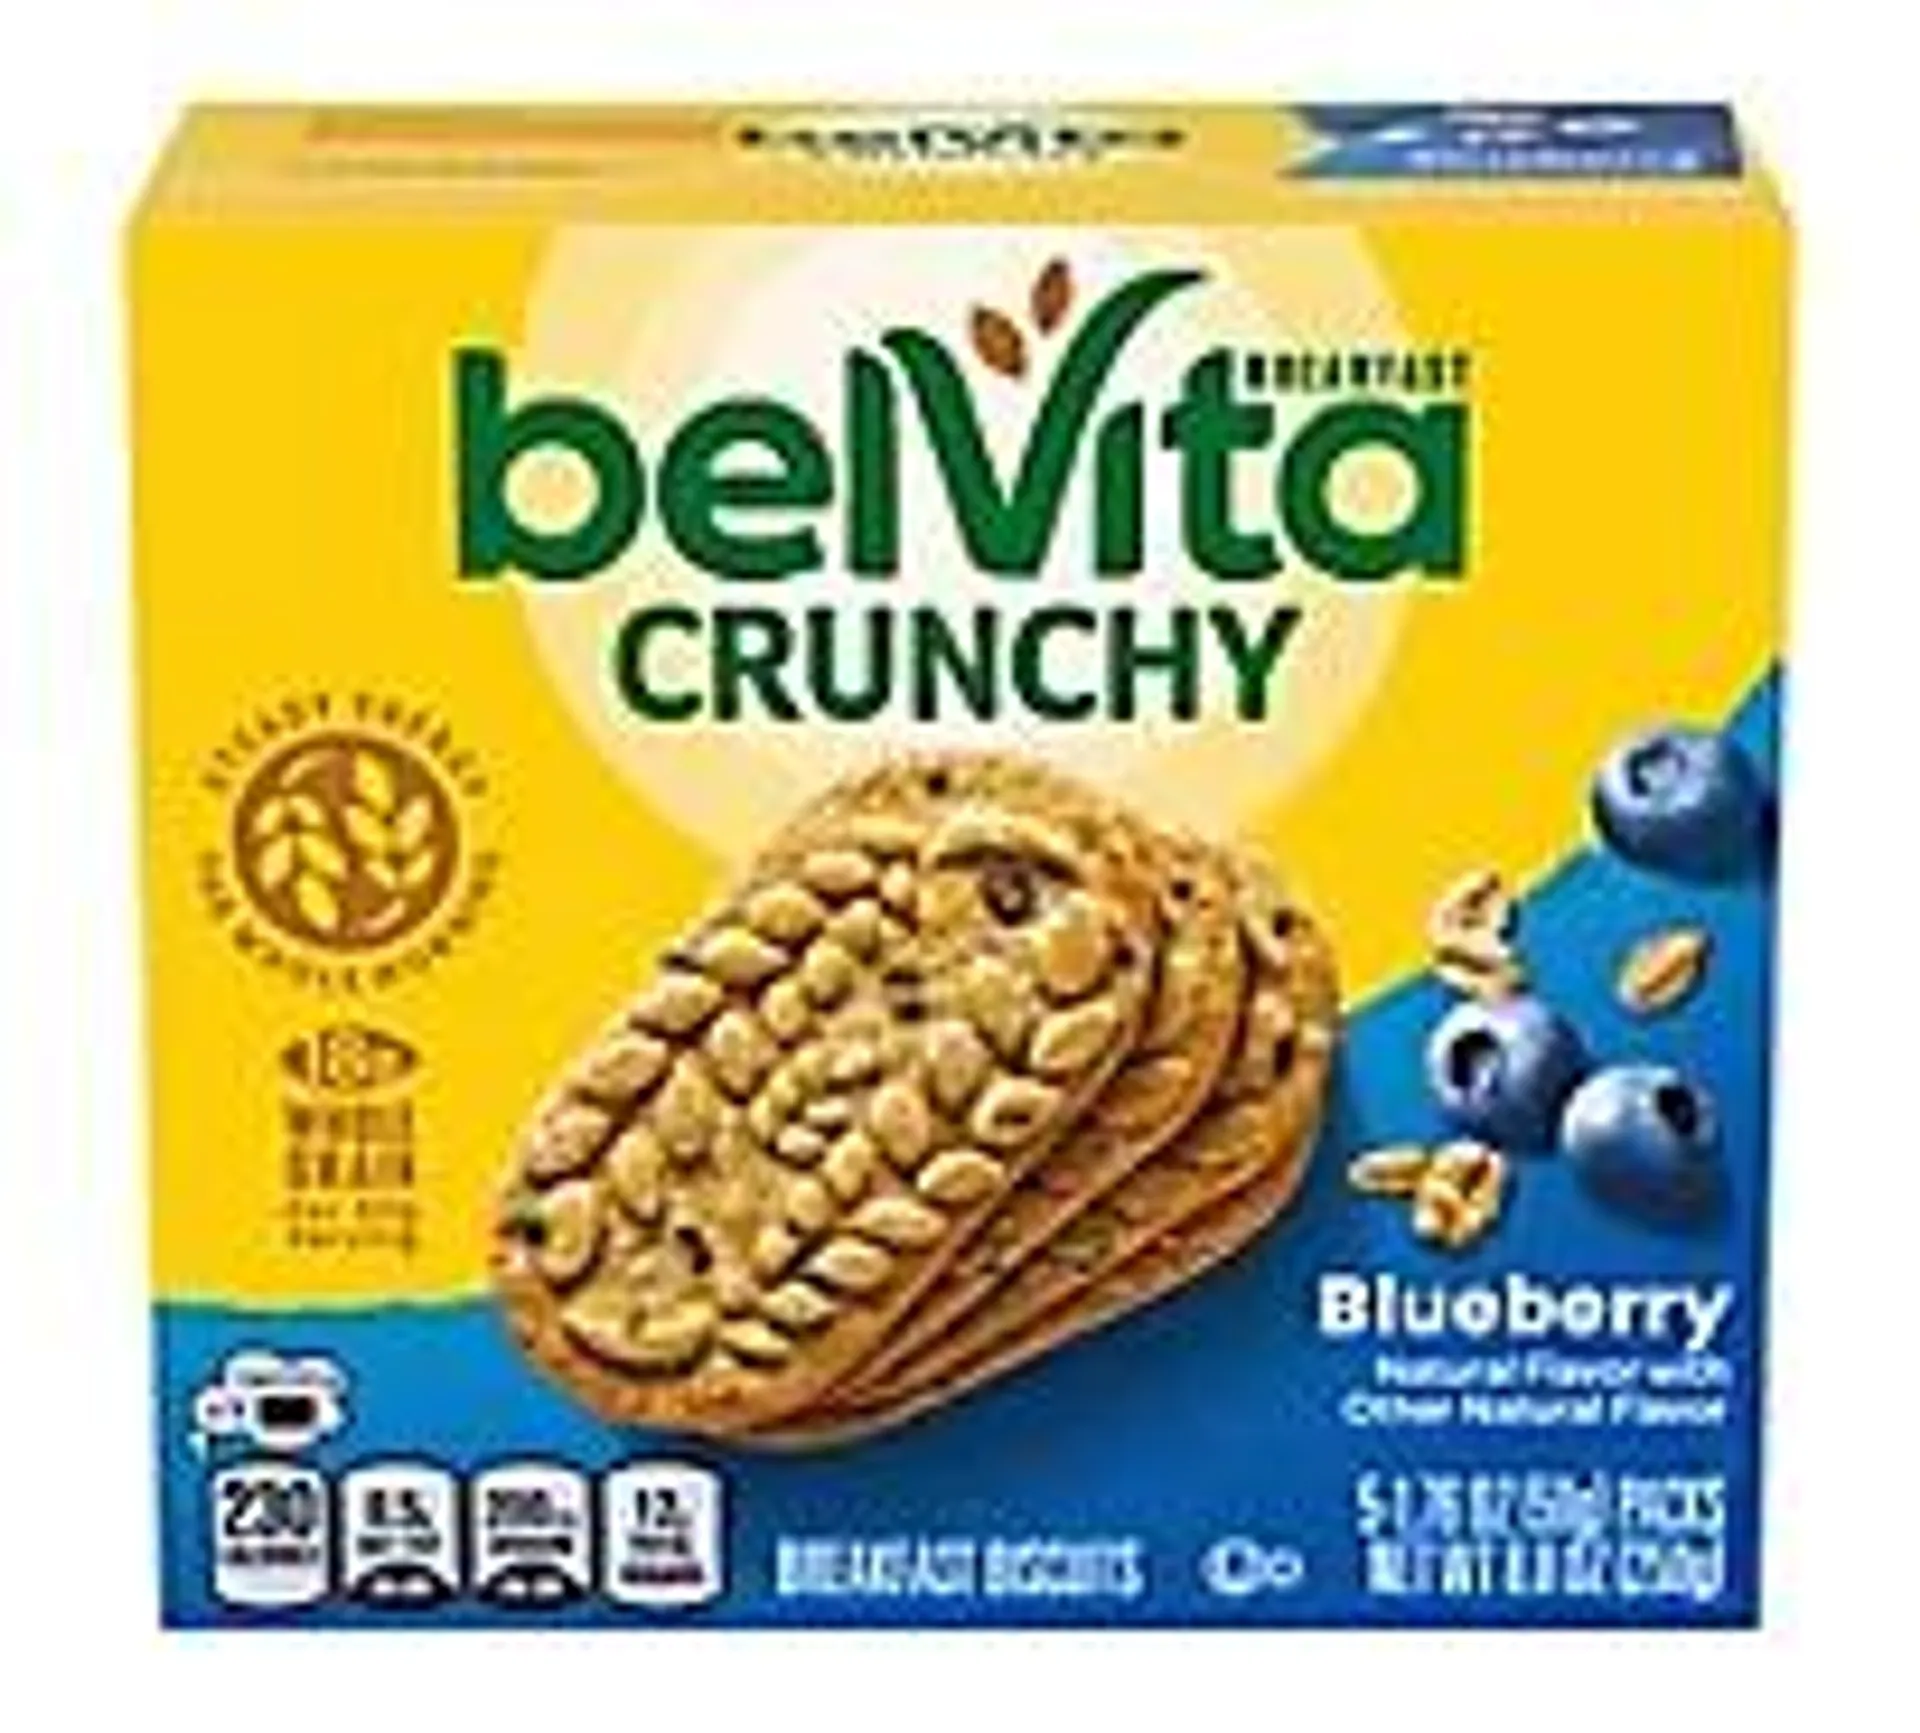 belVita Breakfast Biscuits Blueberry - 5-1.76 Oz